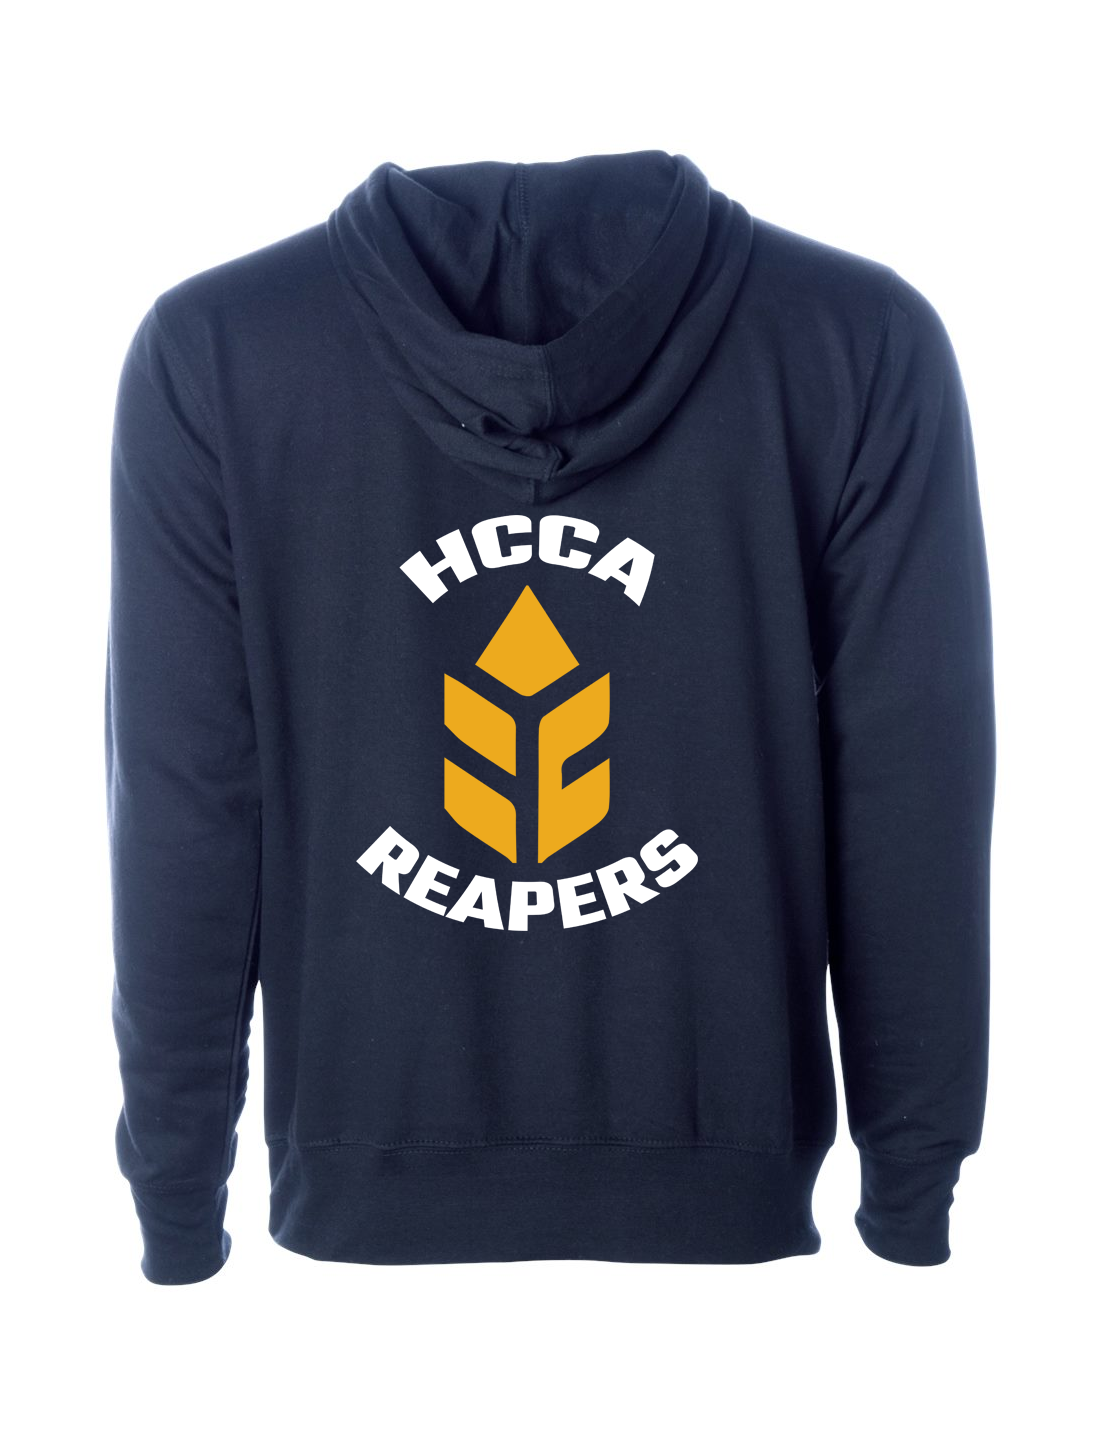 HCCA Reapers Hoodie